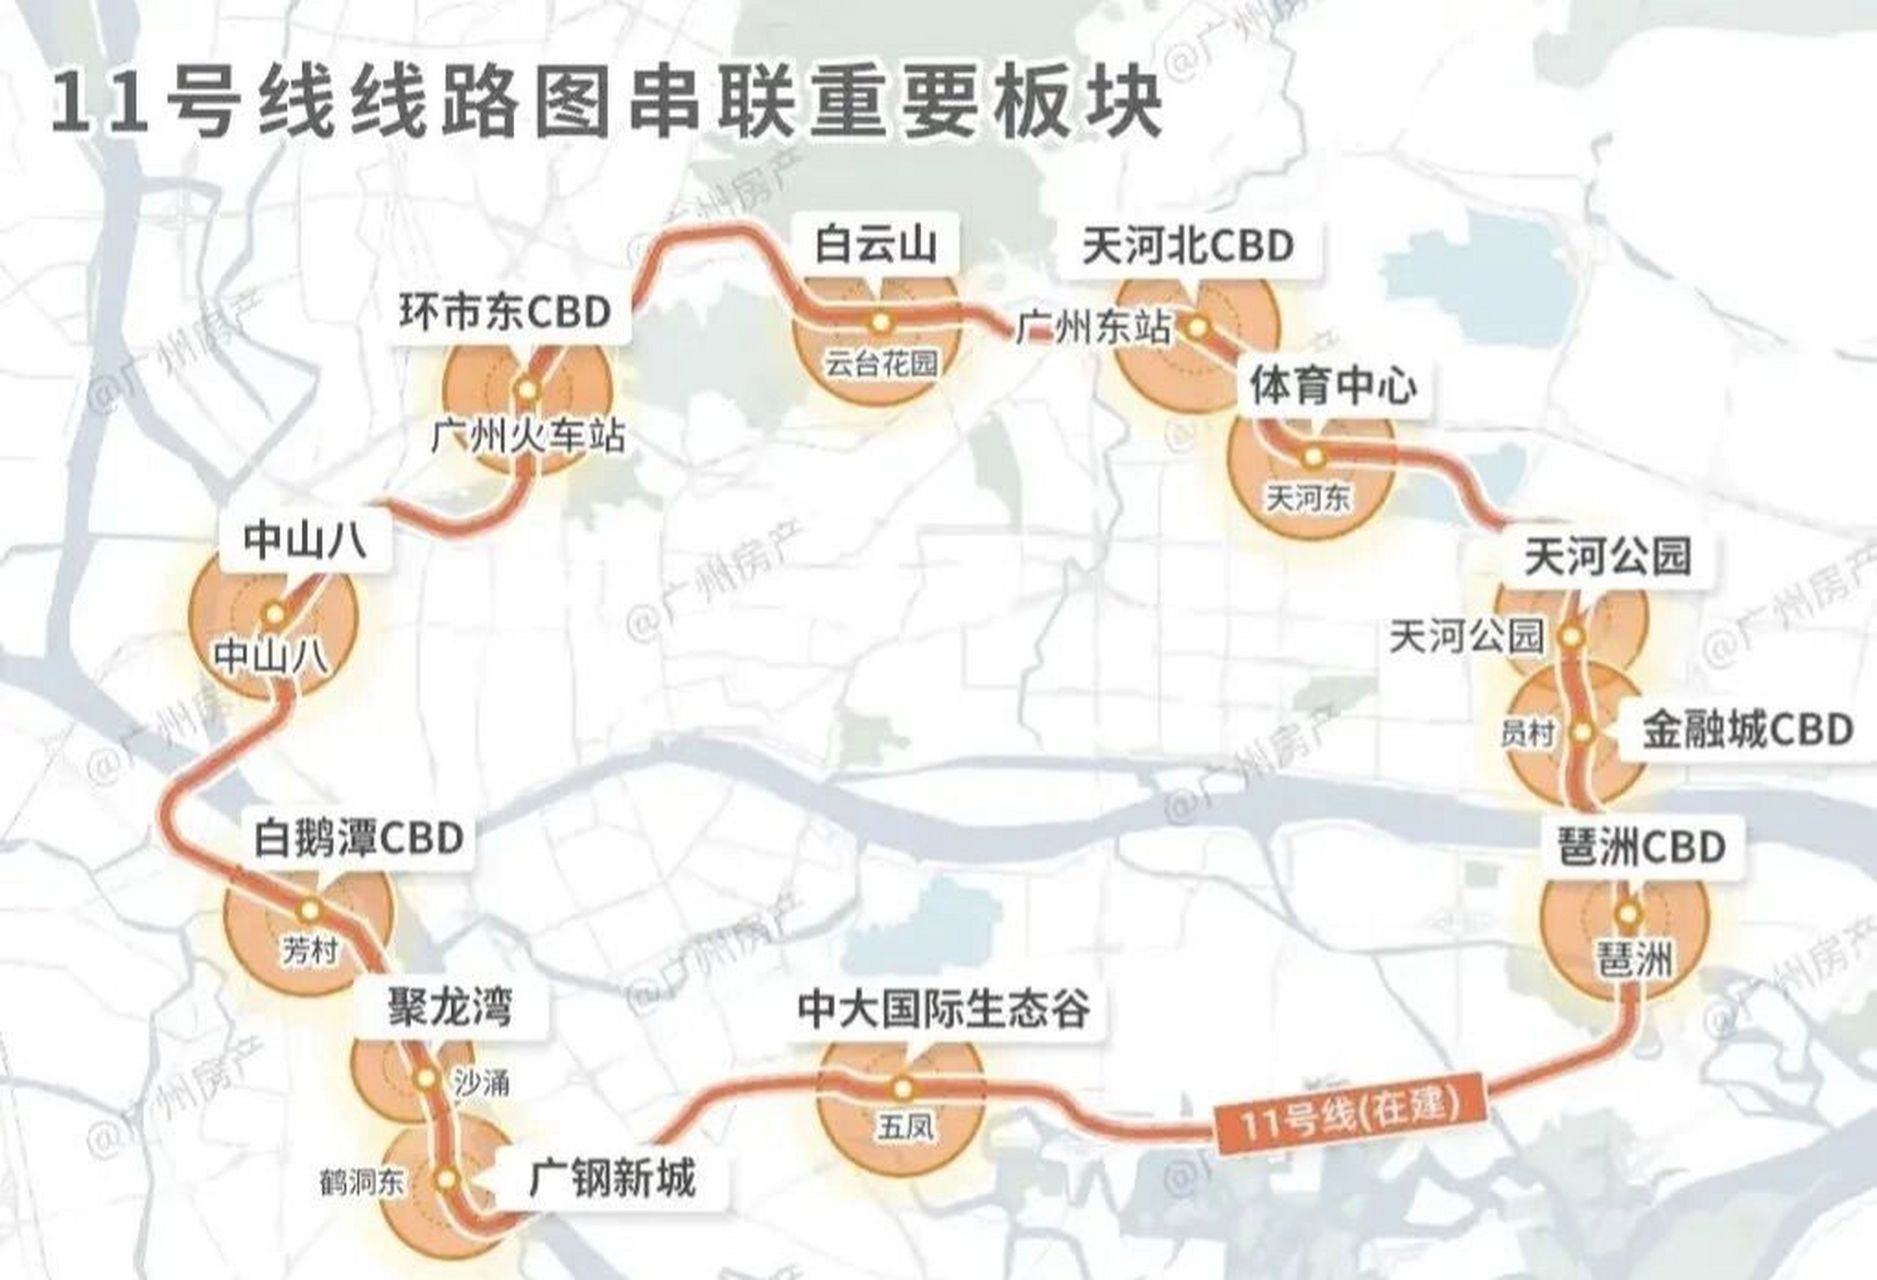 广州地铁环线11号线图图片